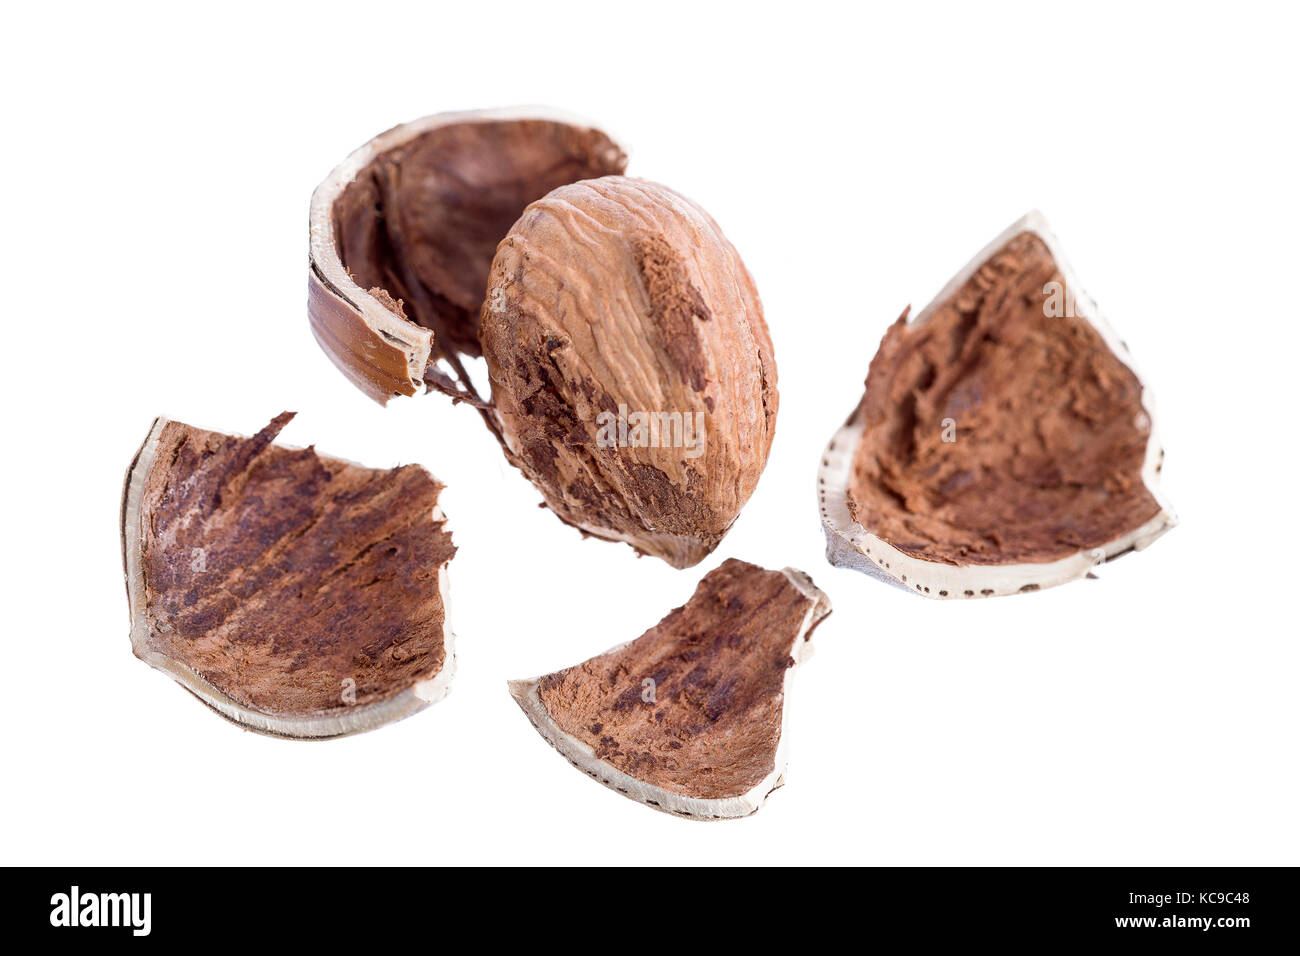 Cracked Hazelnut on white background crop Stock Photo